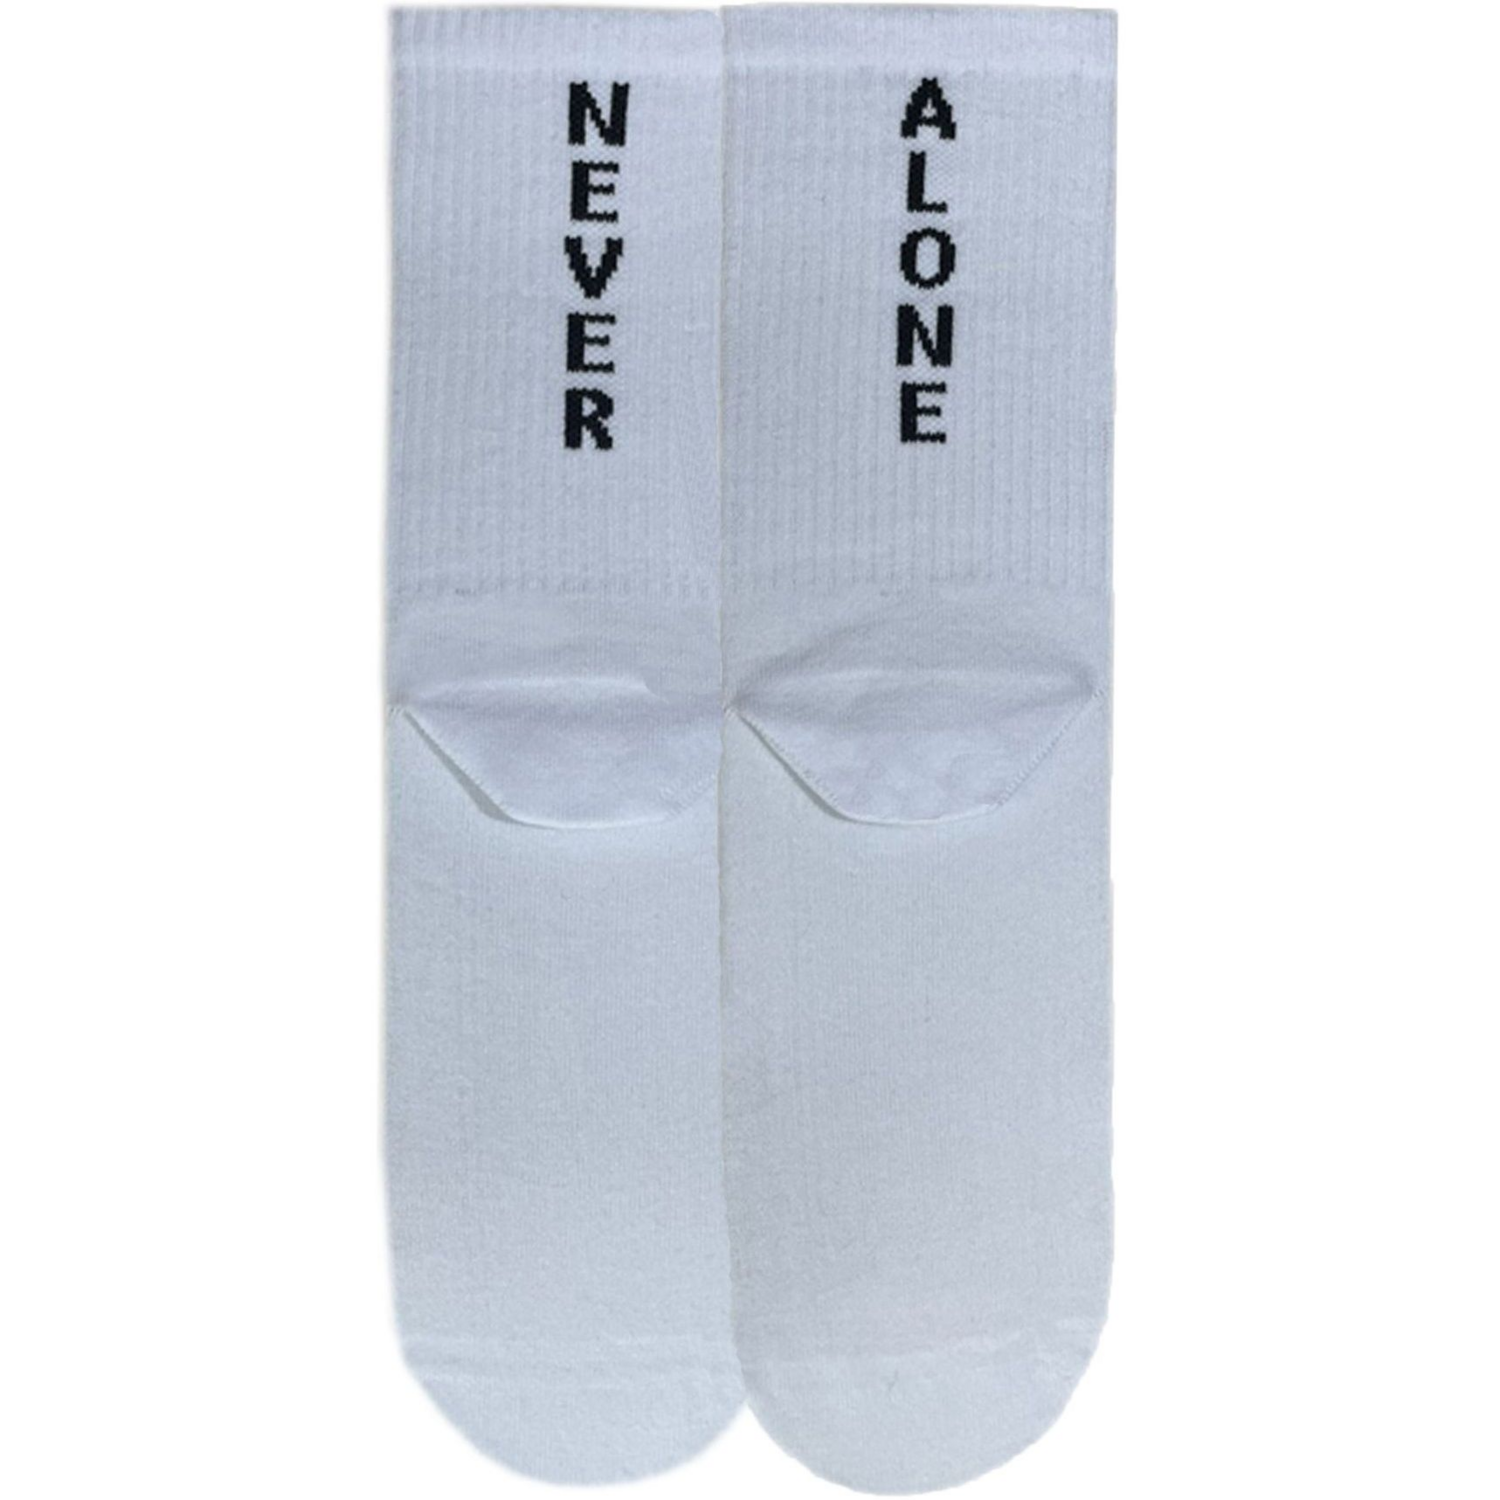 Носки мужские Premier Socks 40-41 1 пара белые с принтом (4820163317915) фото 